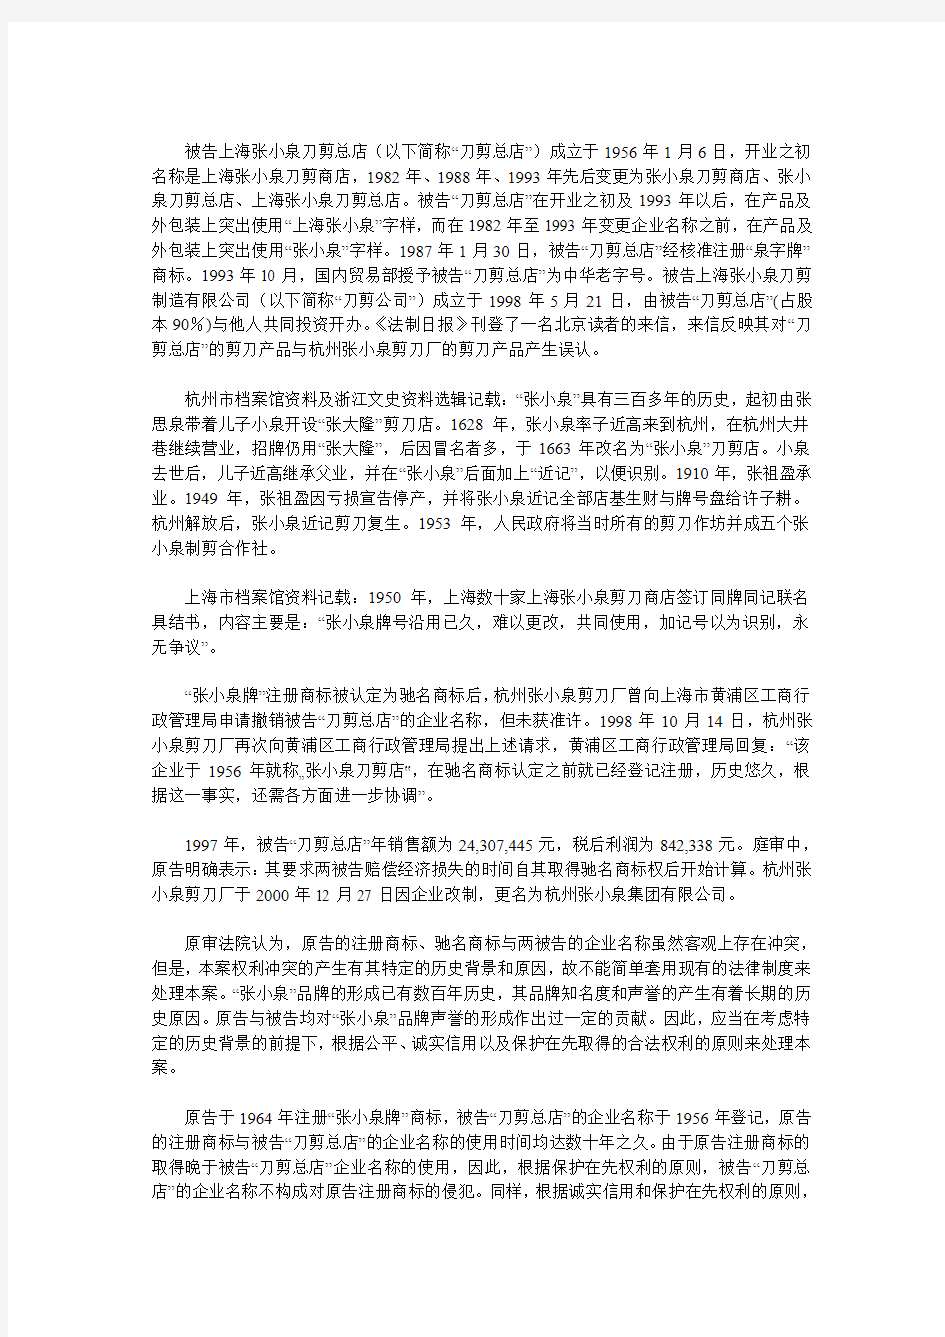 上海市高级人民法院审理杭州张小泉集团有限公司与上海张小泉刀剪总店